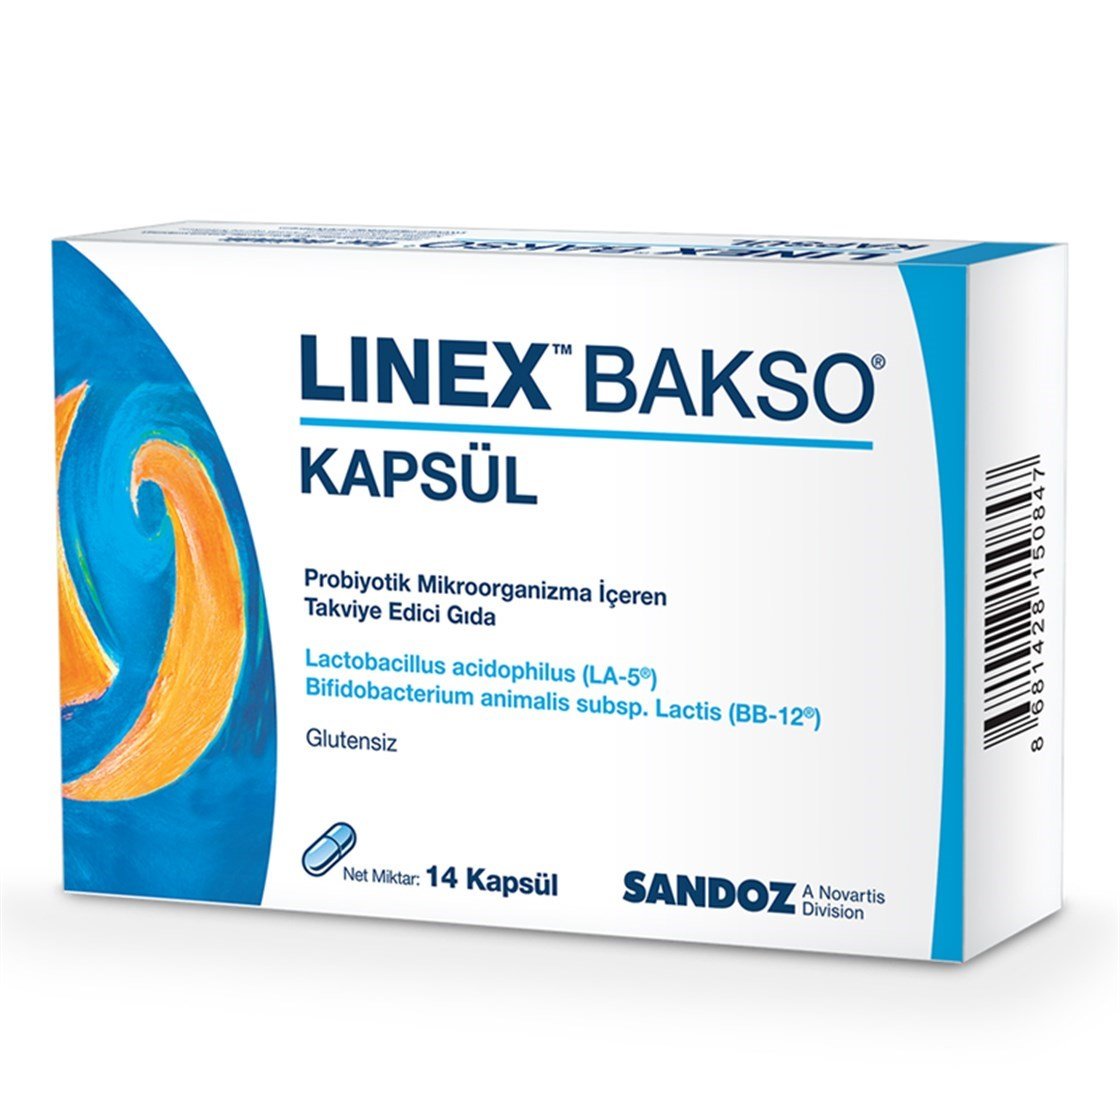 Linex Bakso 14 Kapsül İndirimli Fiyatlar | Dermoailem.com